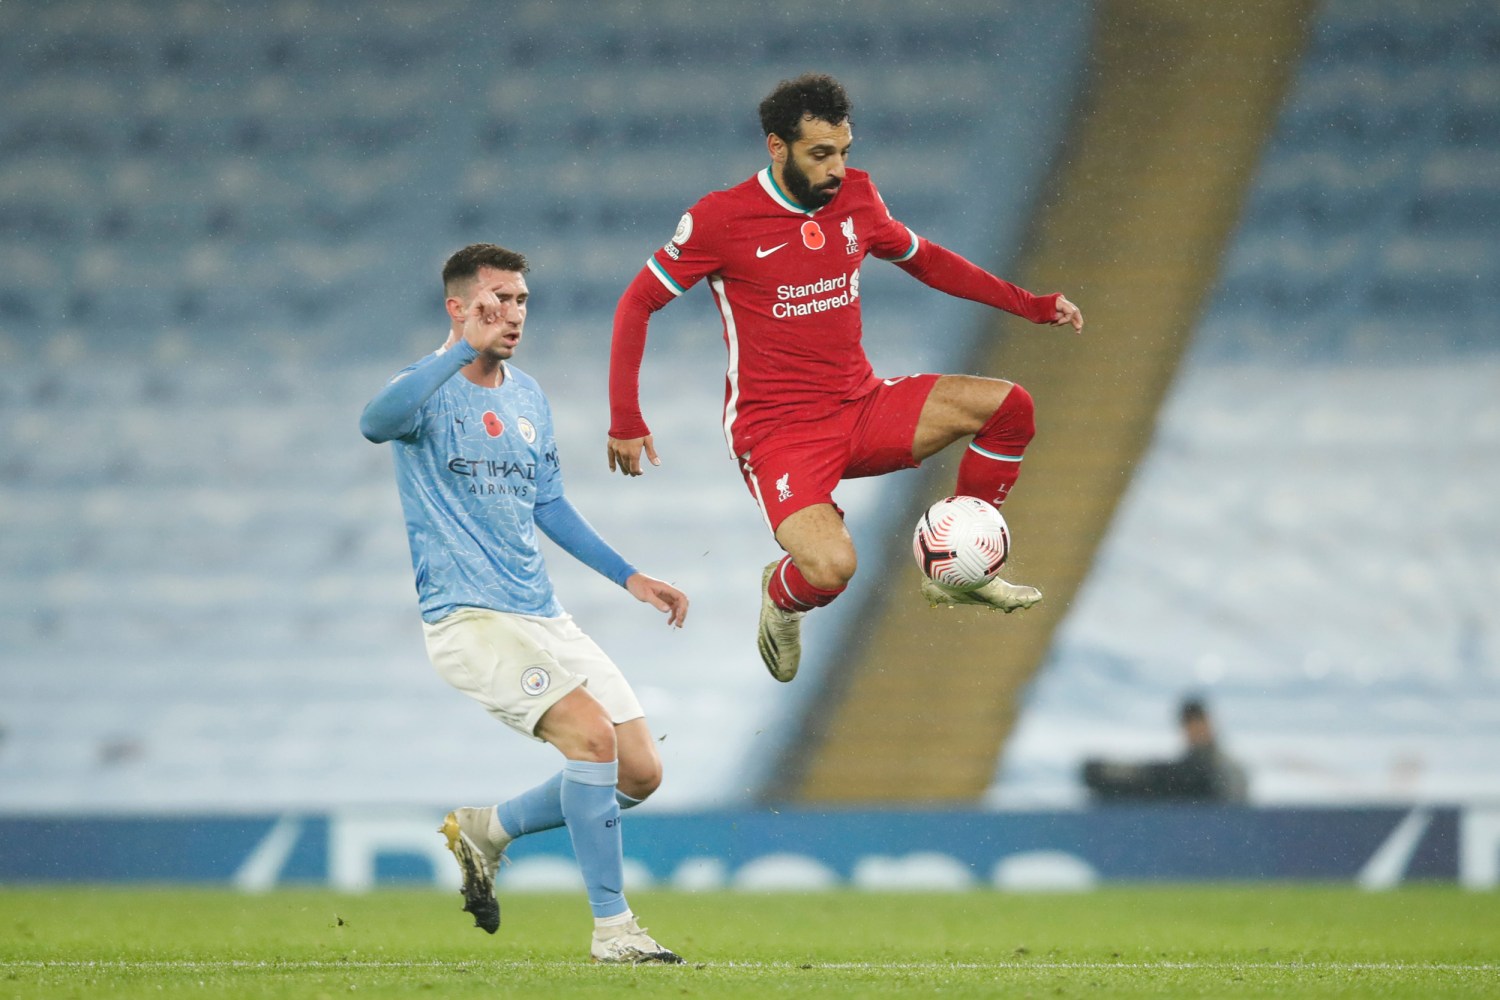 Liverpool FC soccer star Mohamed Salah tests positive for coronavirus